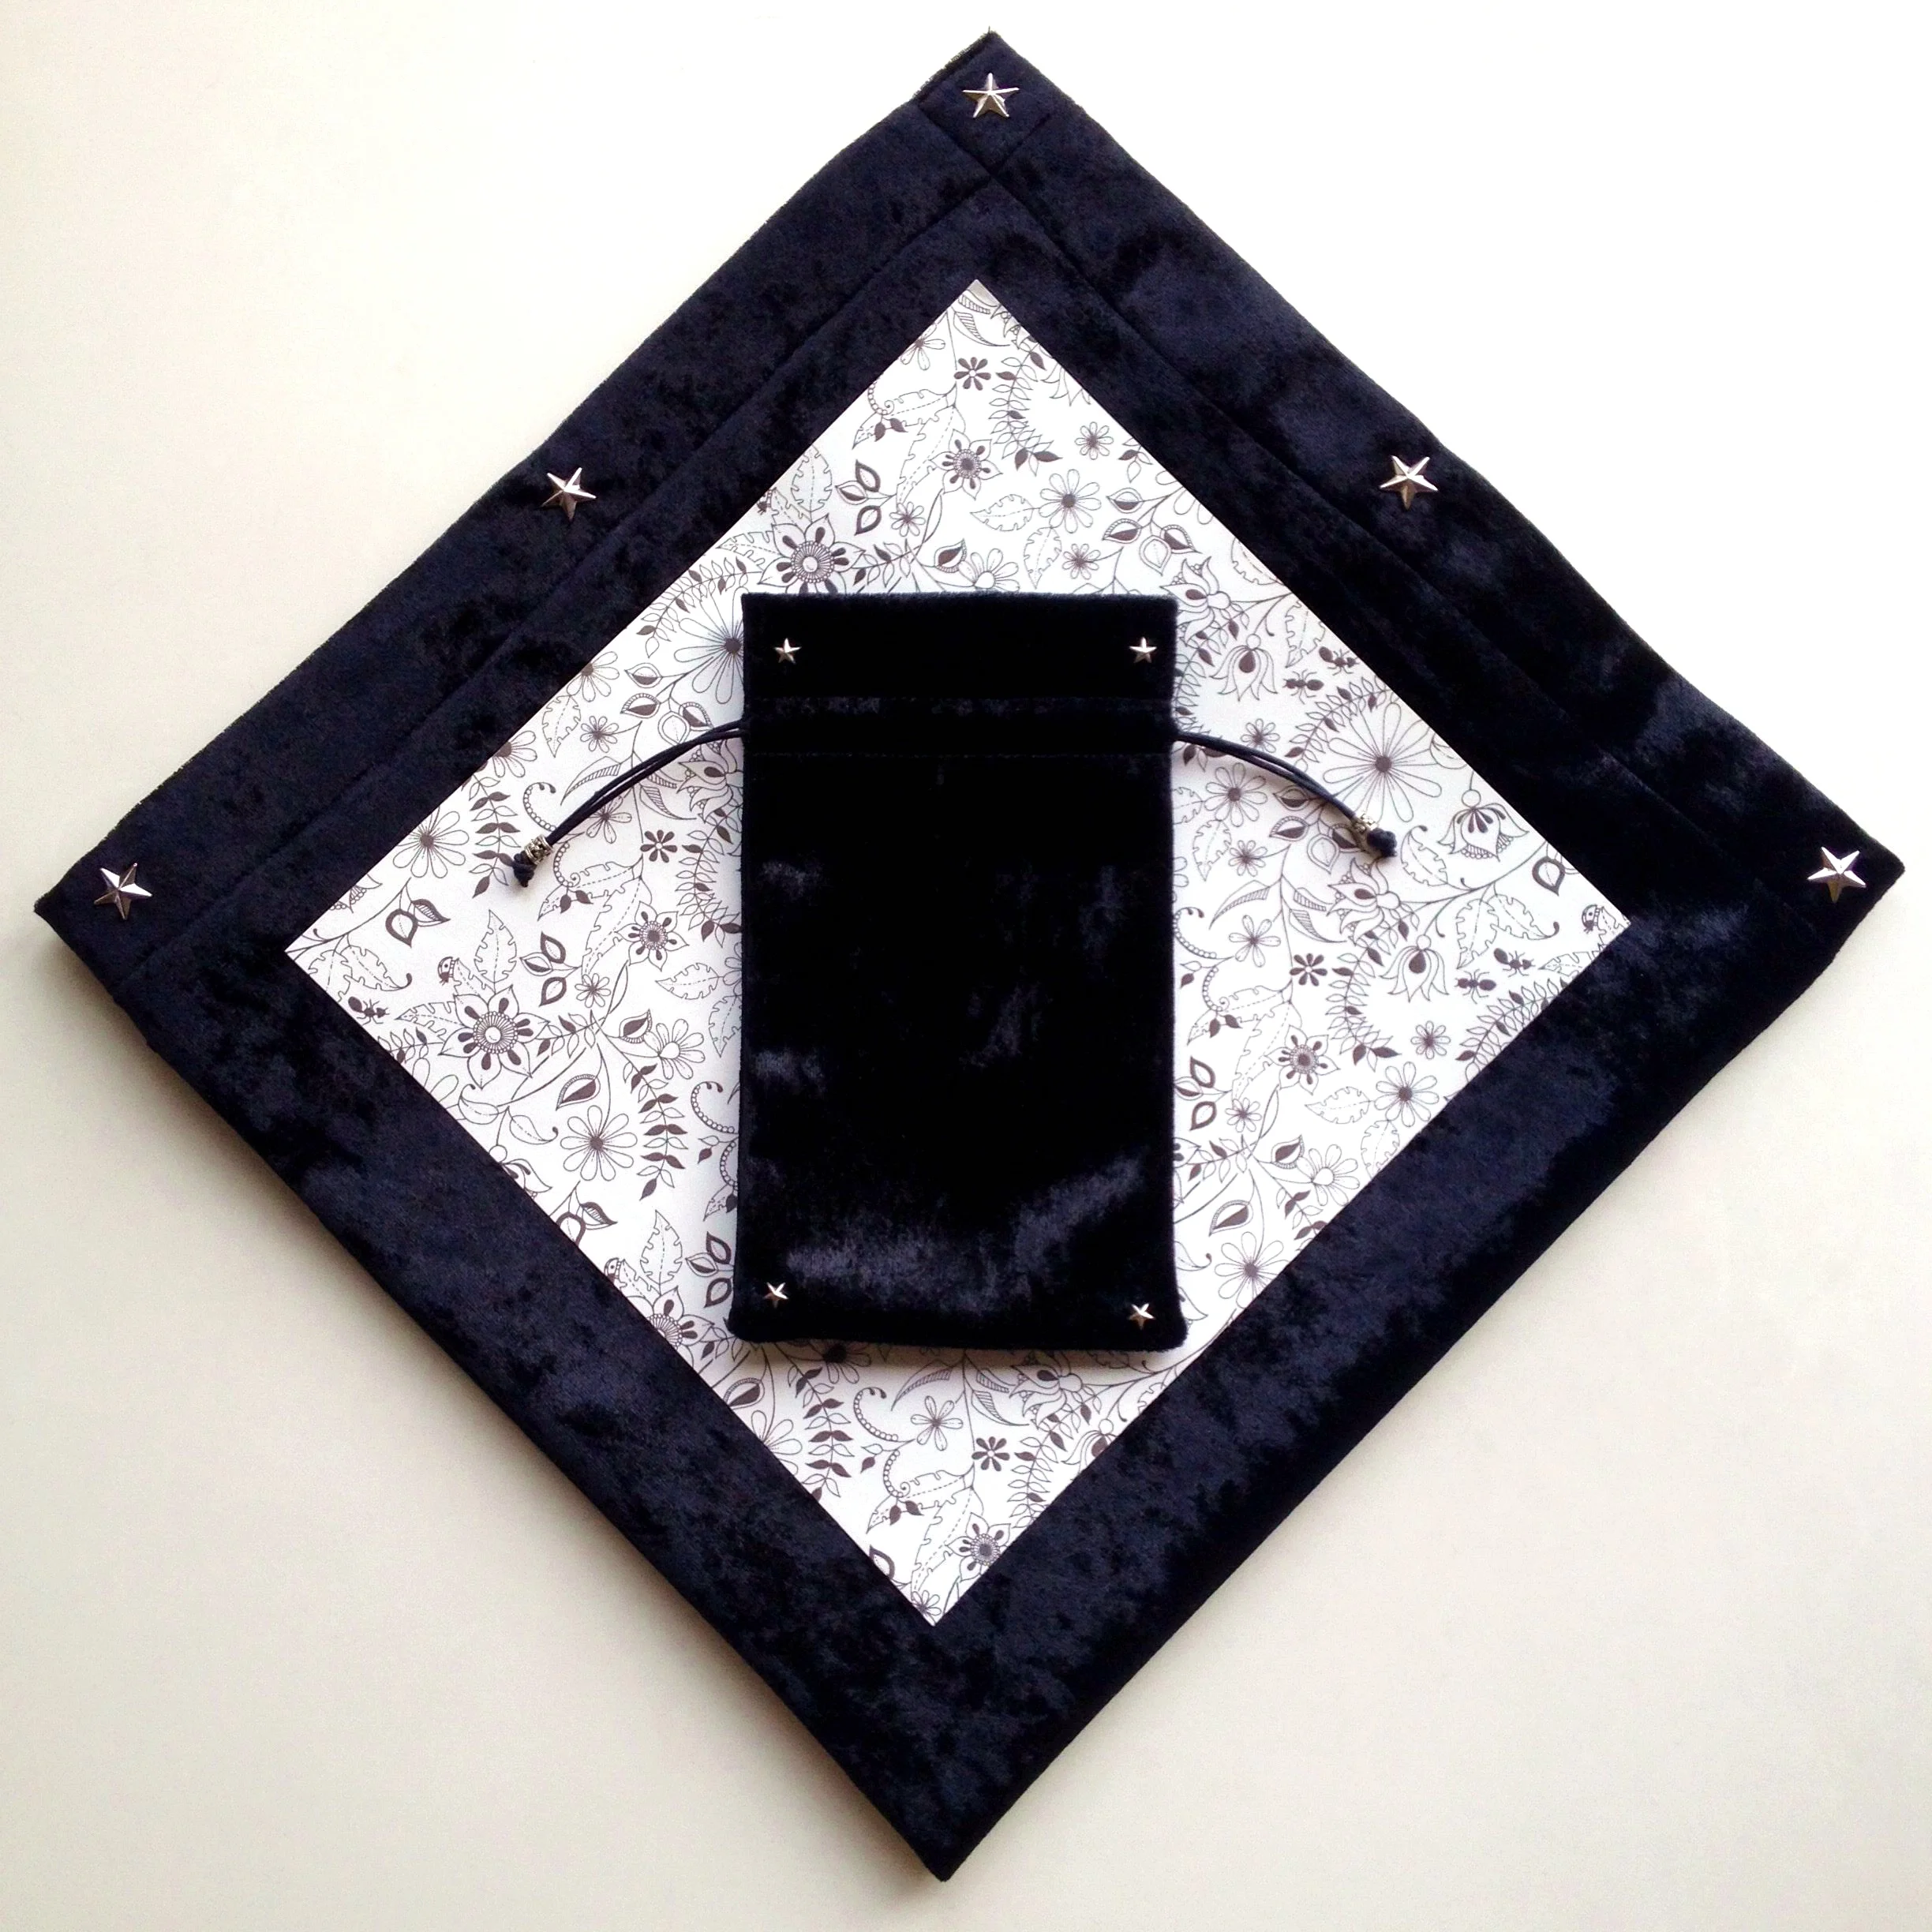 65x65 см синий/фиолетовый/черный/темно-синий бархат Таро скатерть флокирование ткань пентаграмма стиль настольная игра, карты Таро - Цвет: Tablecloth and bag